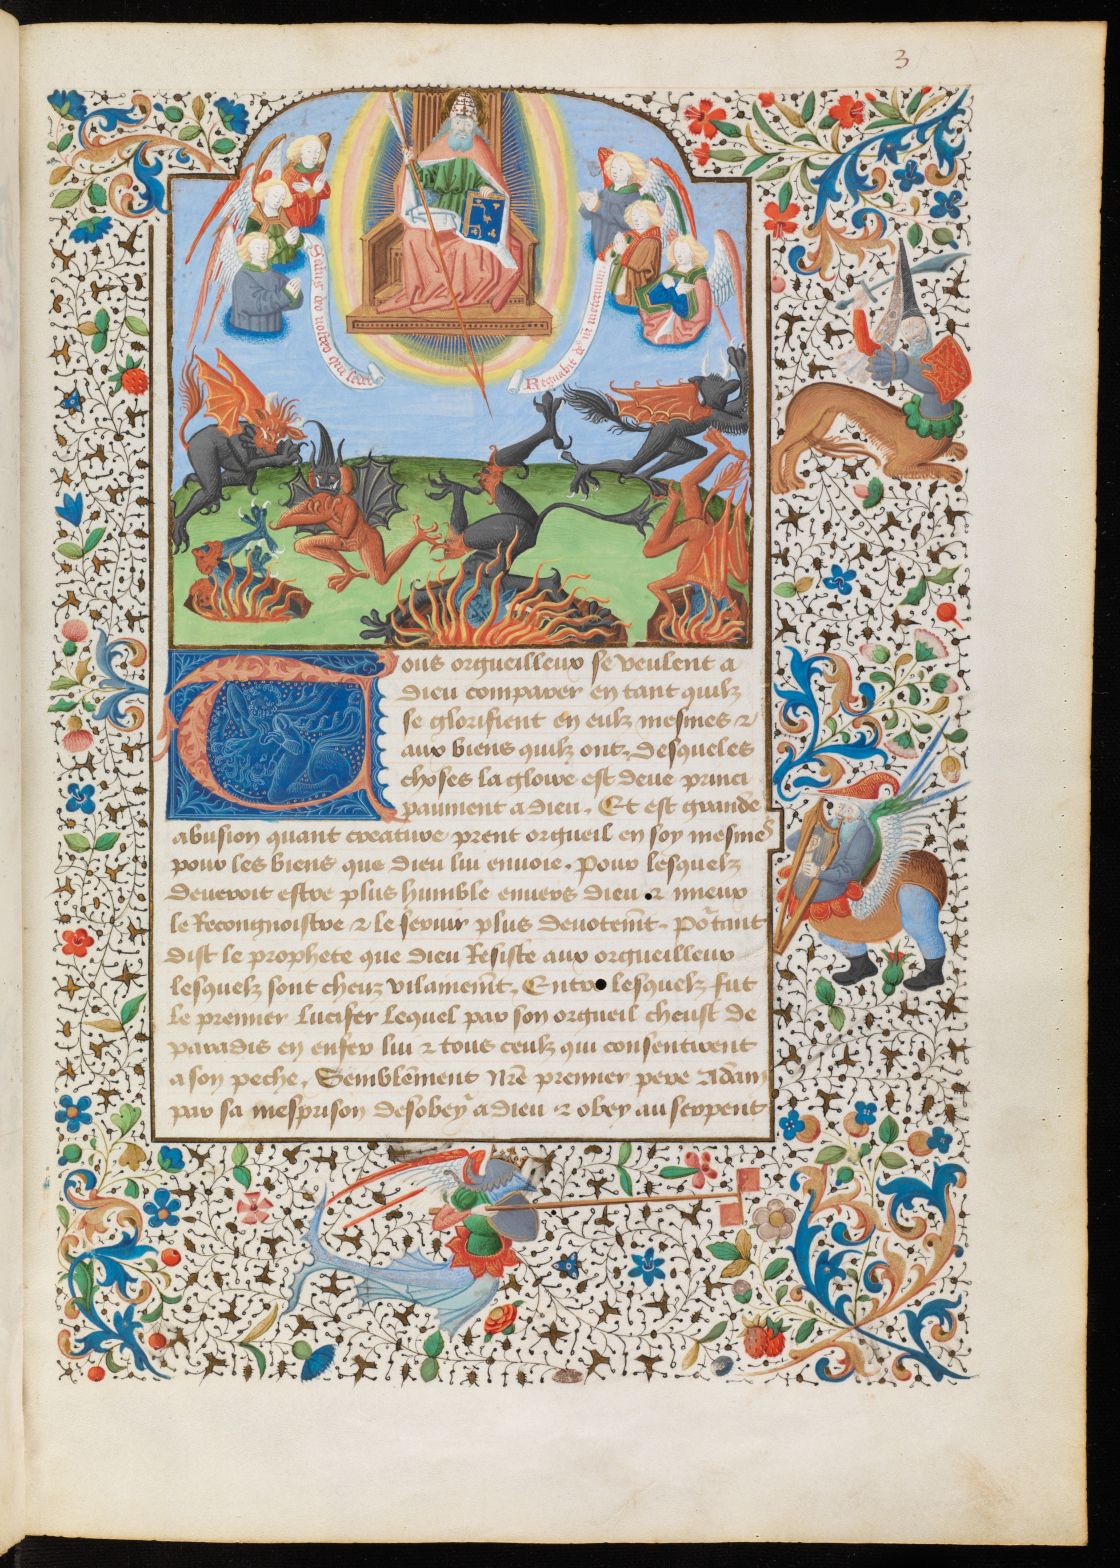 Genève, Bibliothèque de Genève, Ms. fr. 164, f. 3r – Jacques Legrand, Livre de bonnes meurs